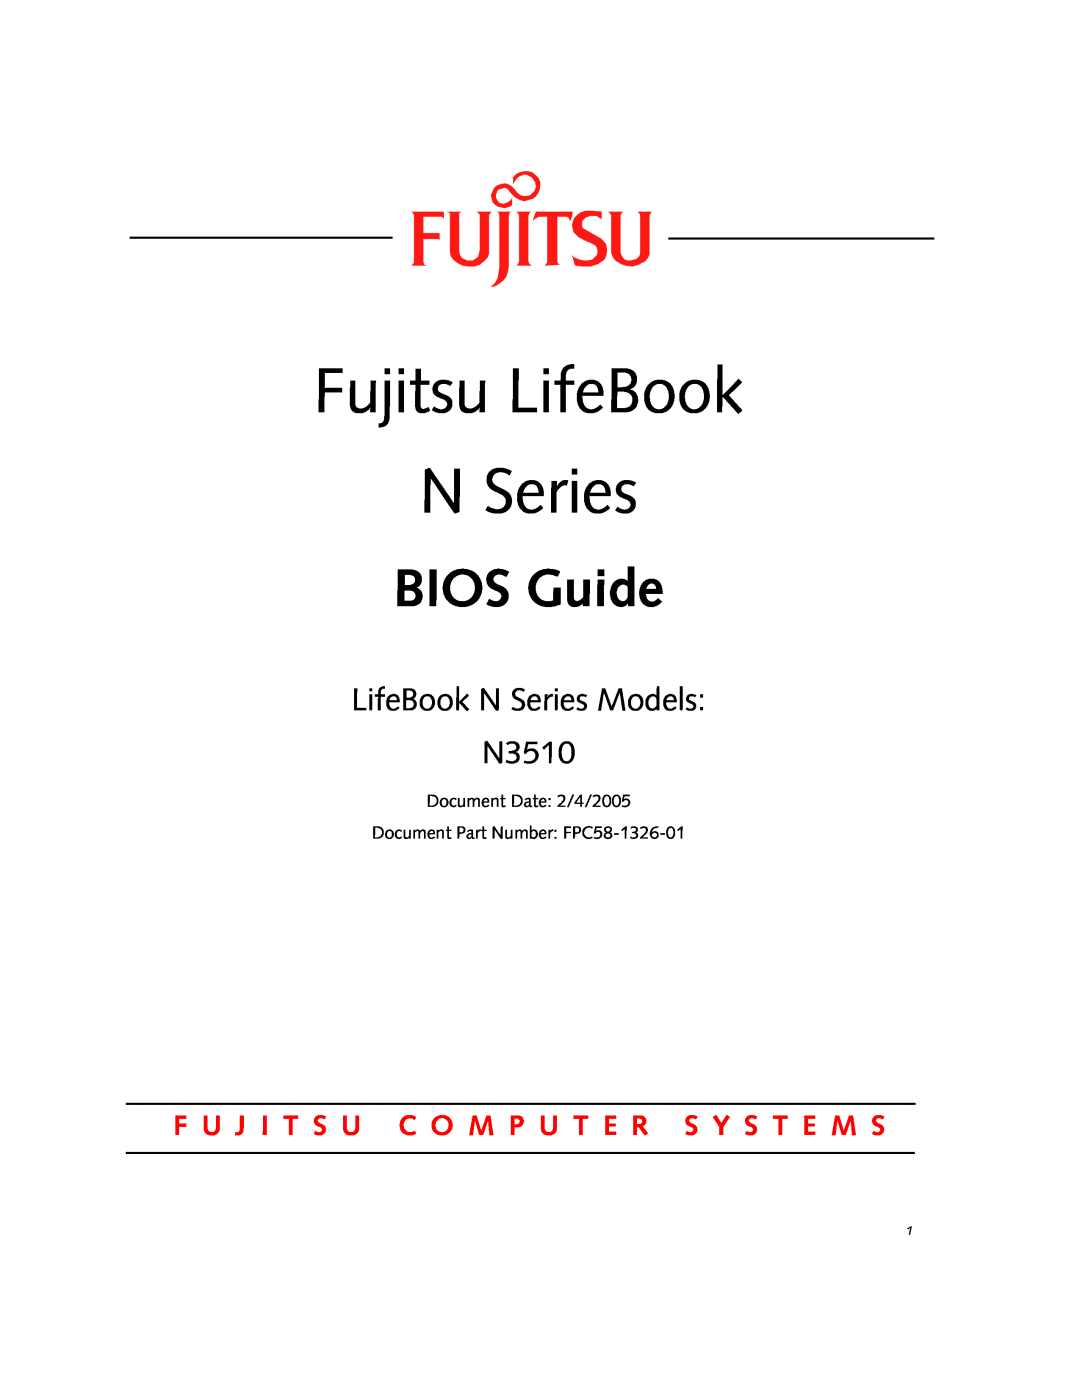 Fujitsu Siemens Computers manual Fujitsu LifeBook N Series, BIOS Guide, LifeBook N Series Models N3510 